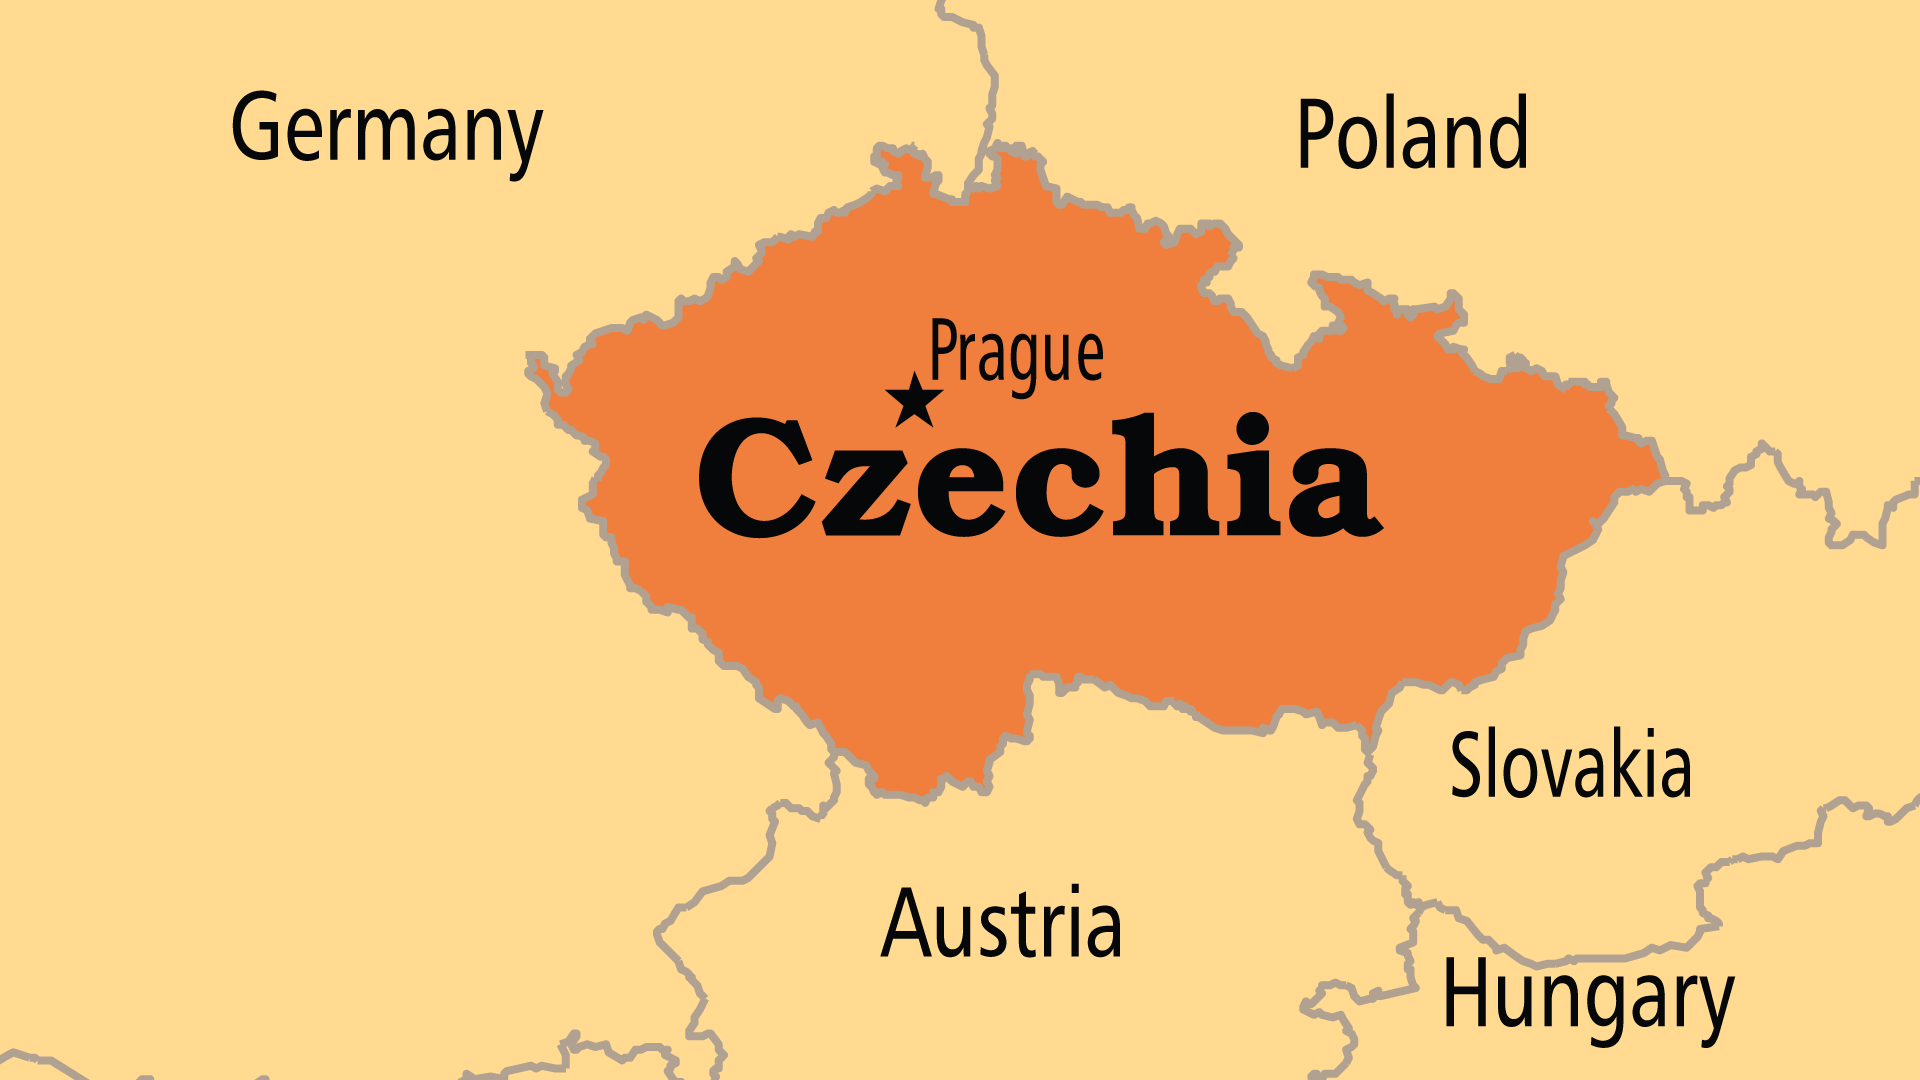 Czechia (Operation World)